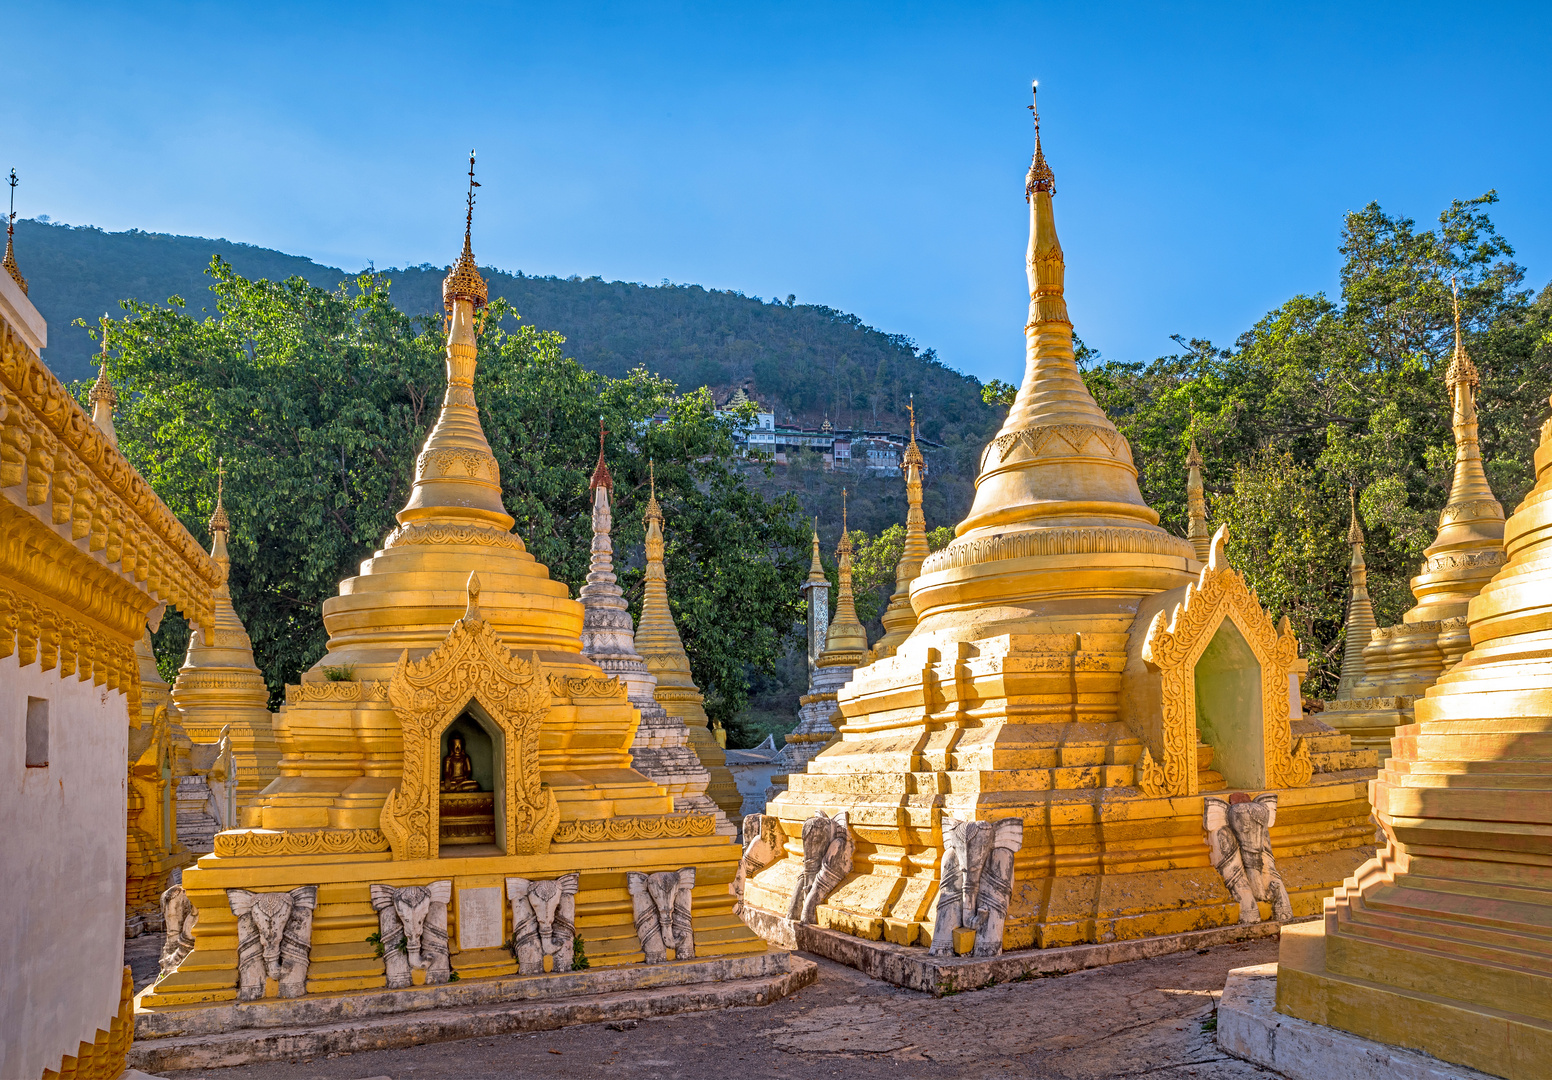 Yan Aung Myin - Htu Par Yone Pagoda